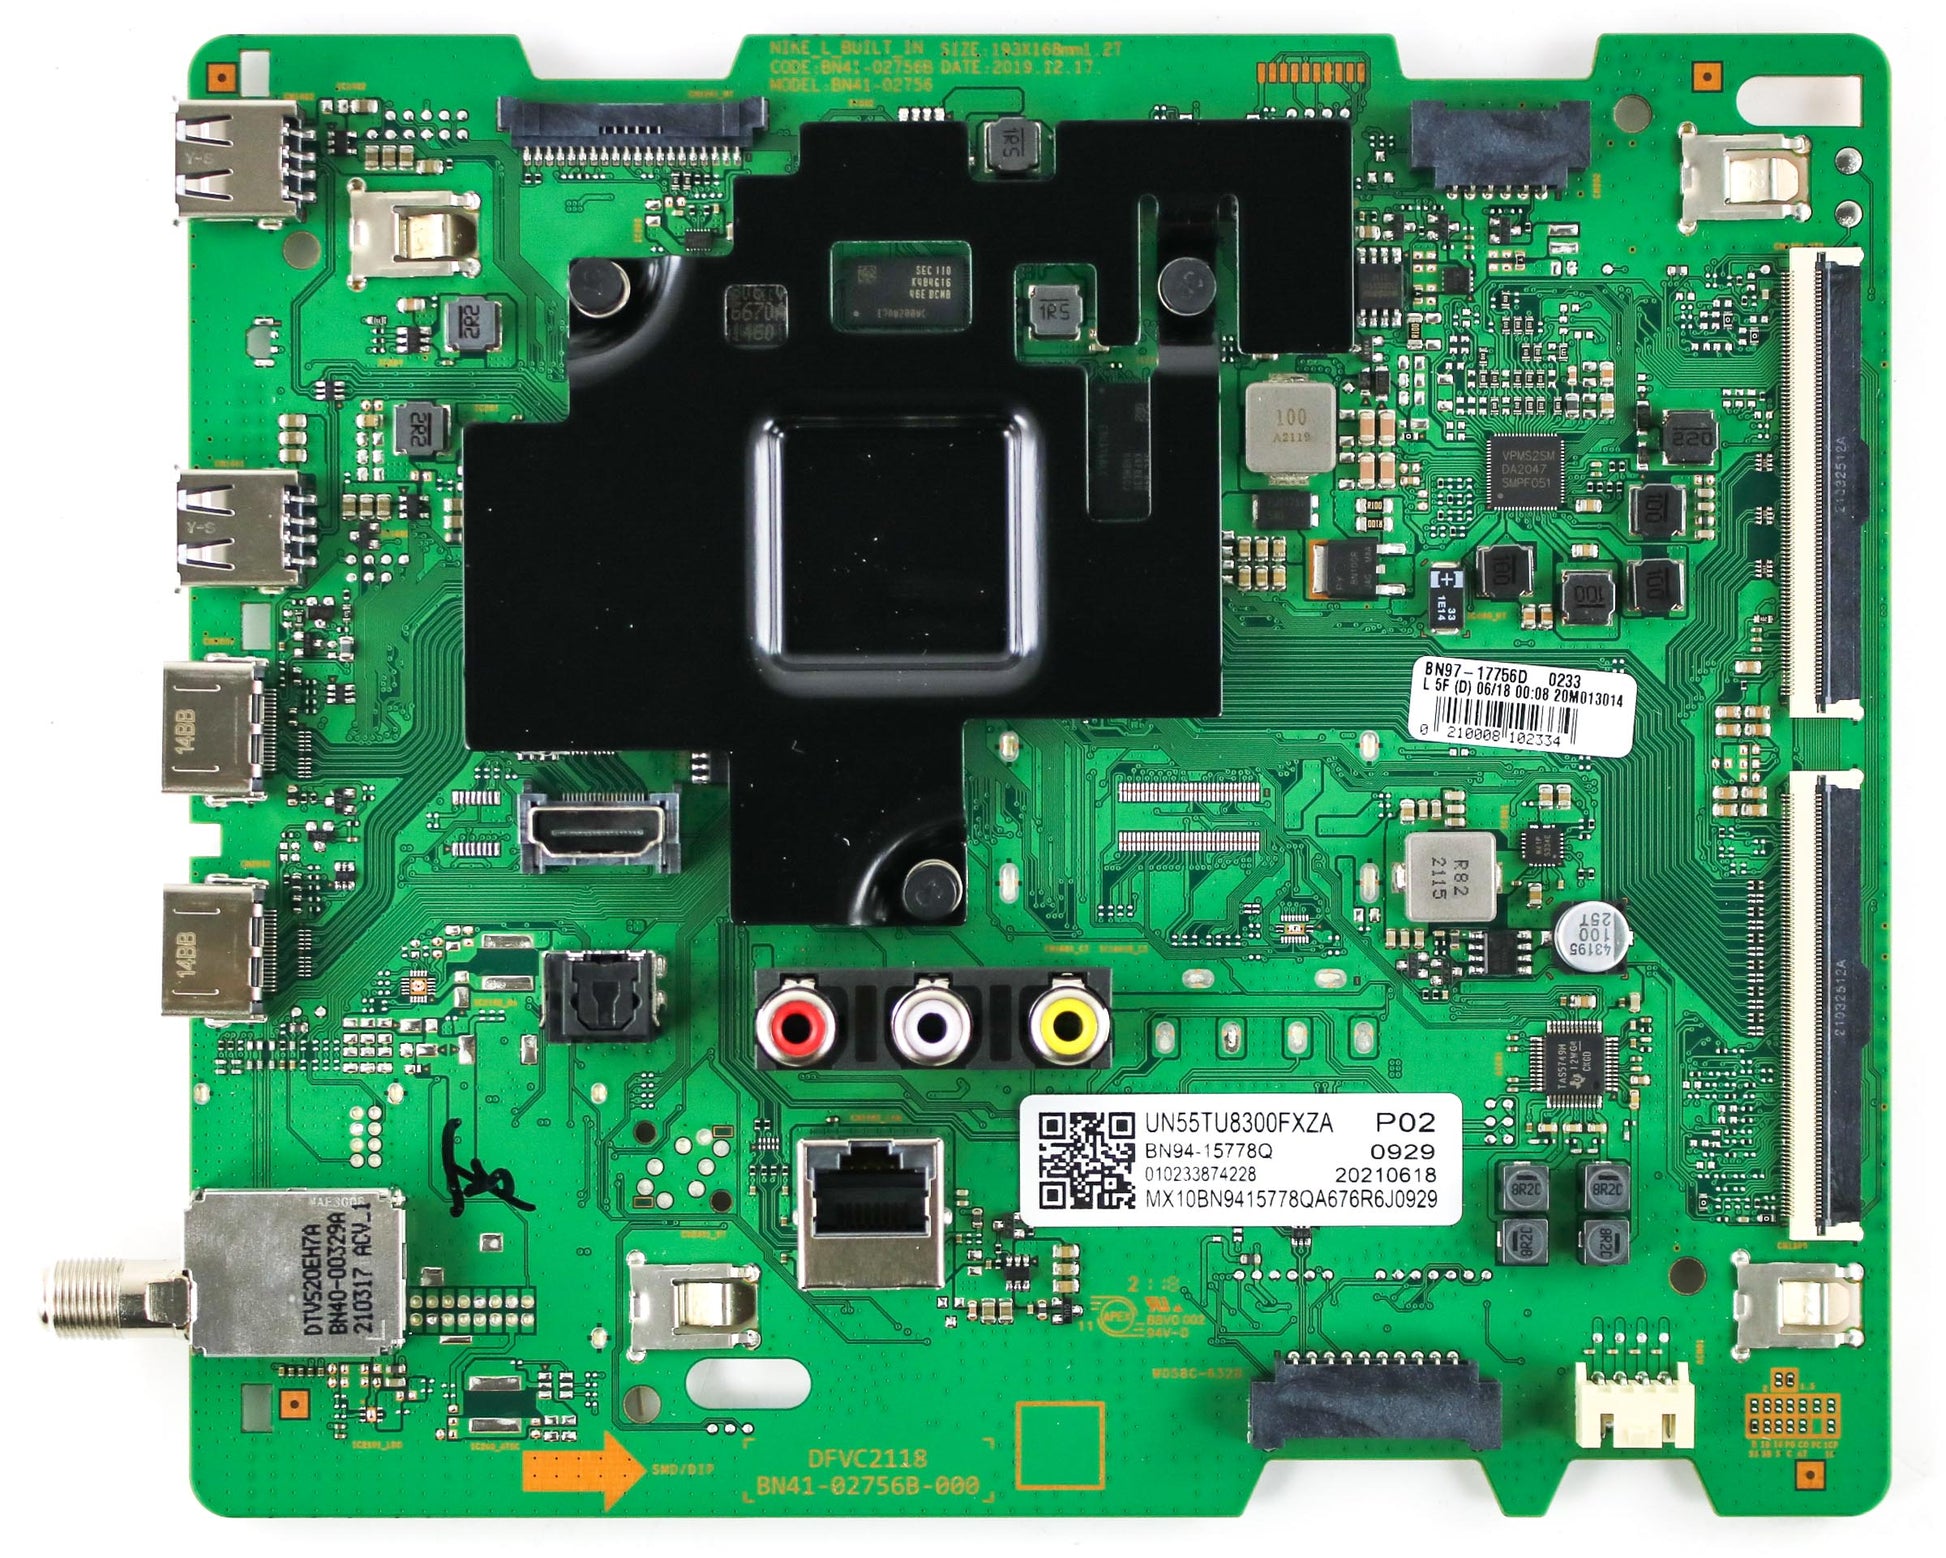 Samsung BN94-15778Q Main Board for UN55TU8300FXZA (Version FA01)